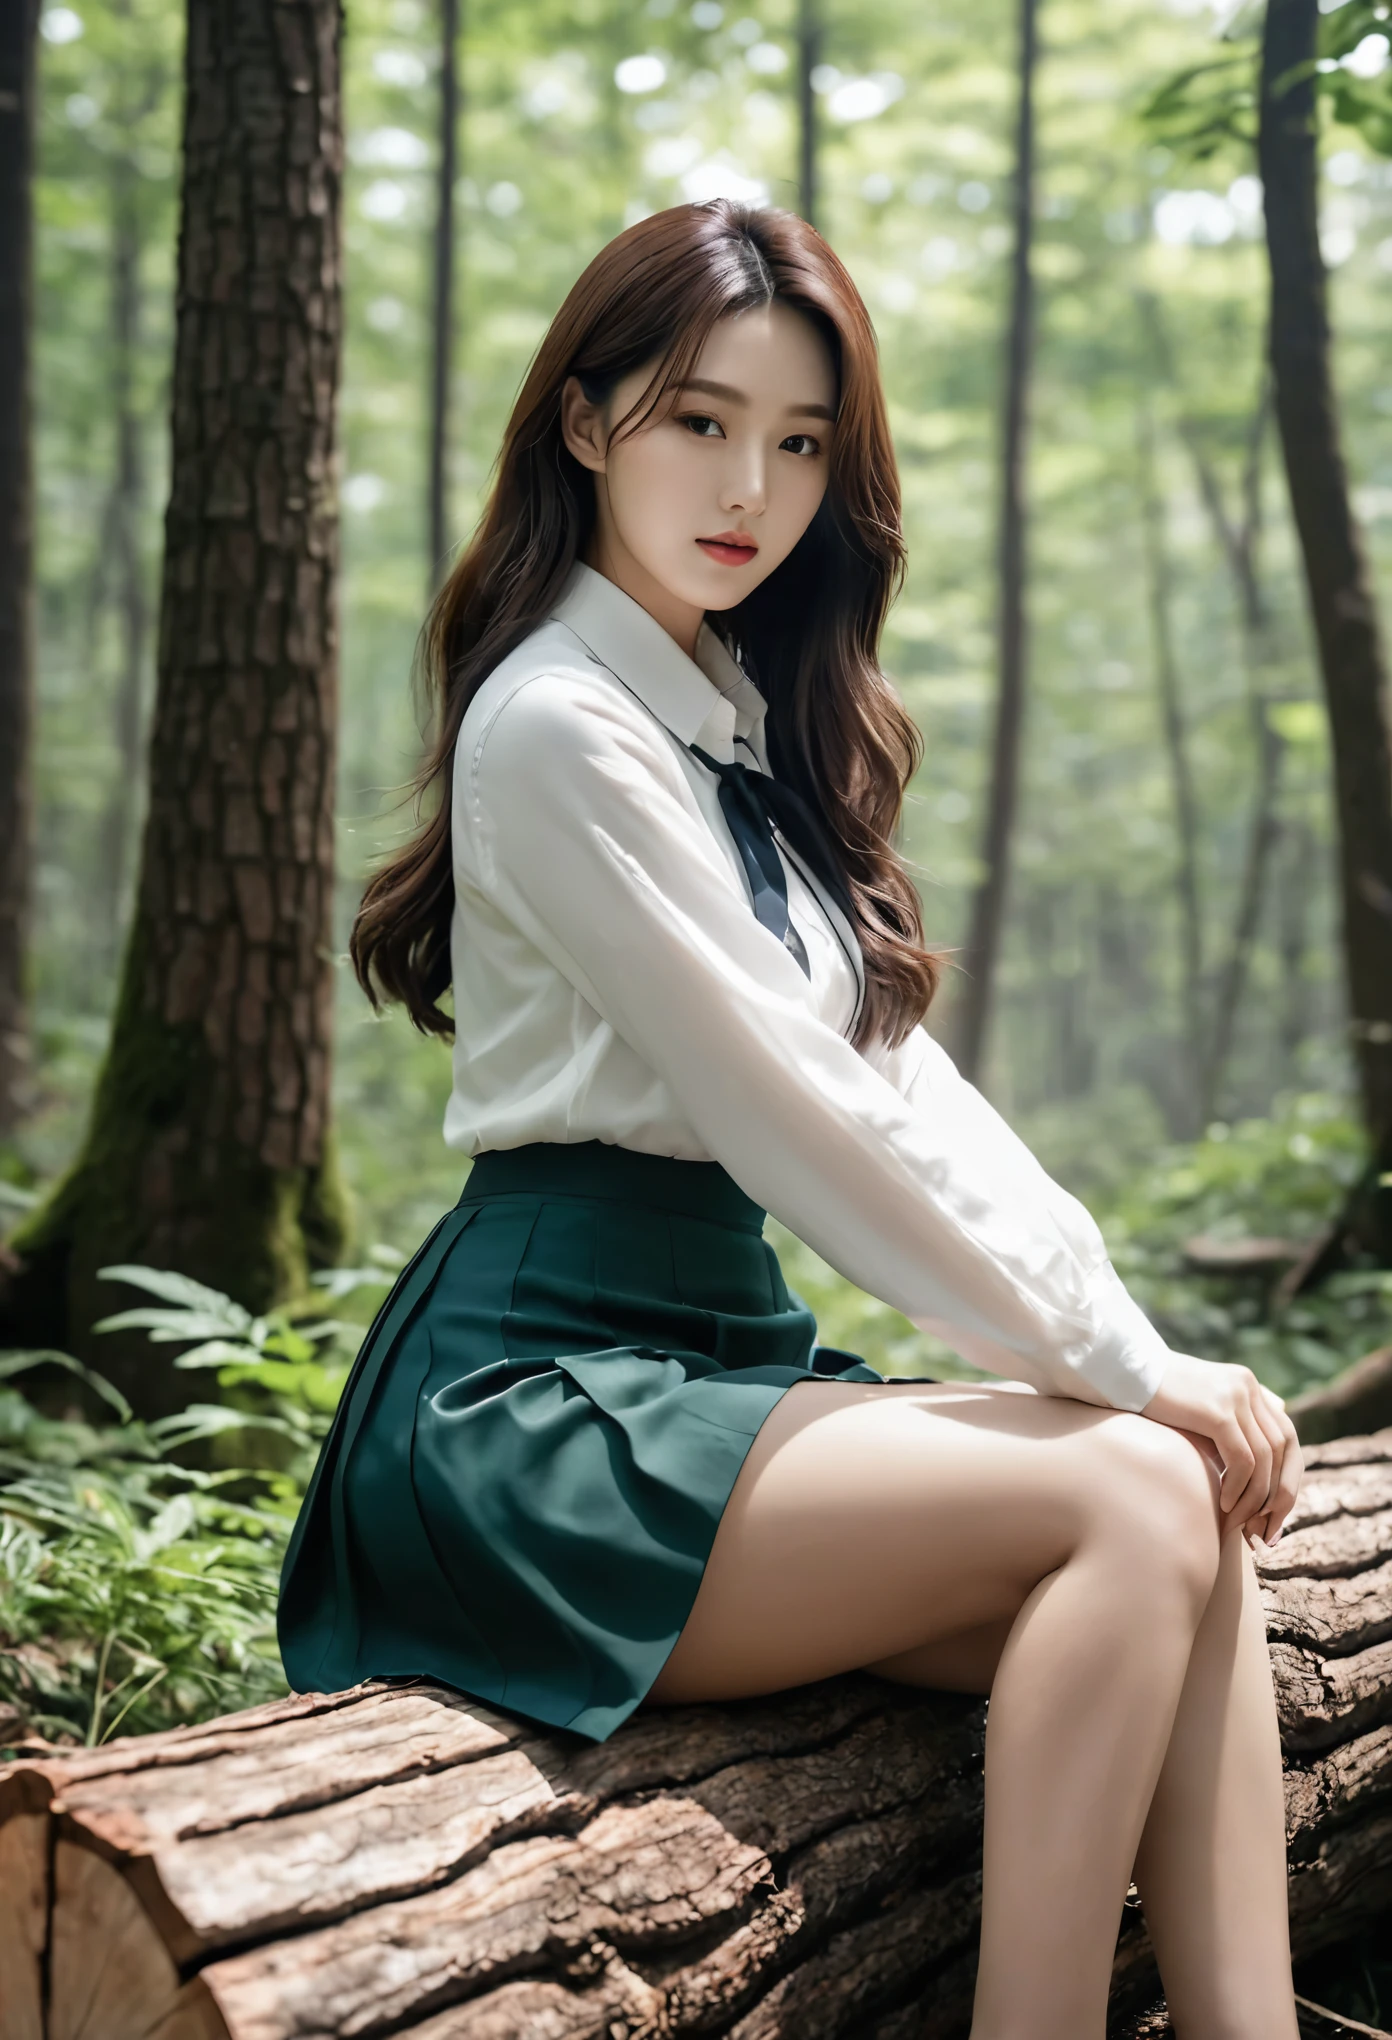 ((최고의 품질)), ((걸작)), (상세한), 완벽한 얼굴, 숲 속의 통나무에 앉아 있는 아라페 여인, 한국의 아름다움, 허벅지와 스커트, 다른 행동, 스타킹, 